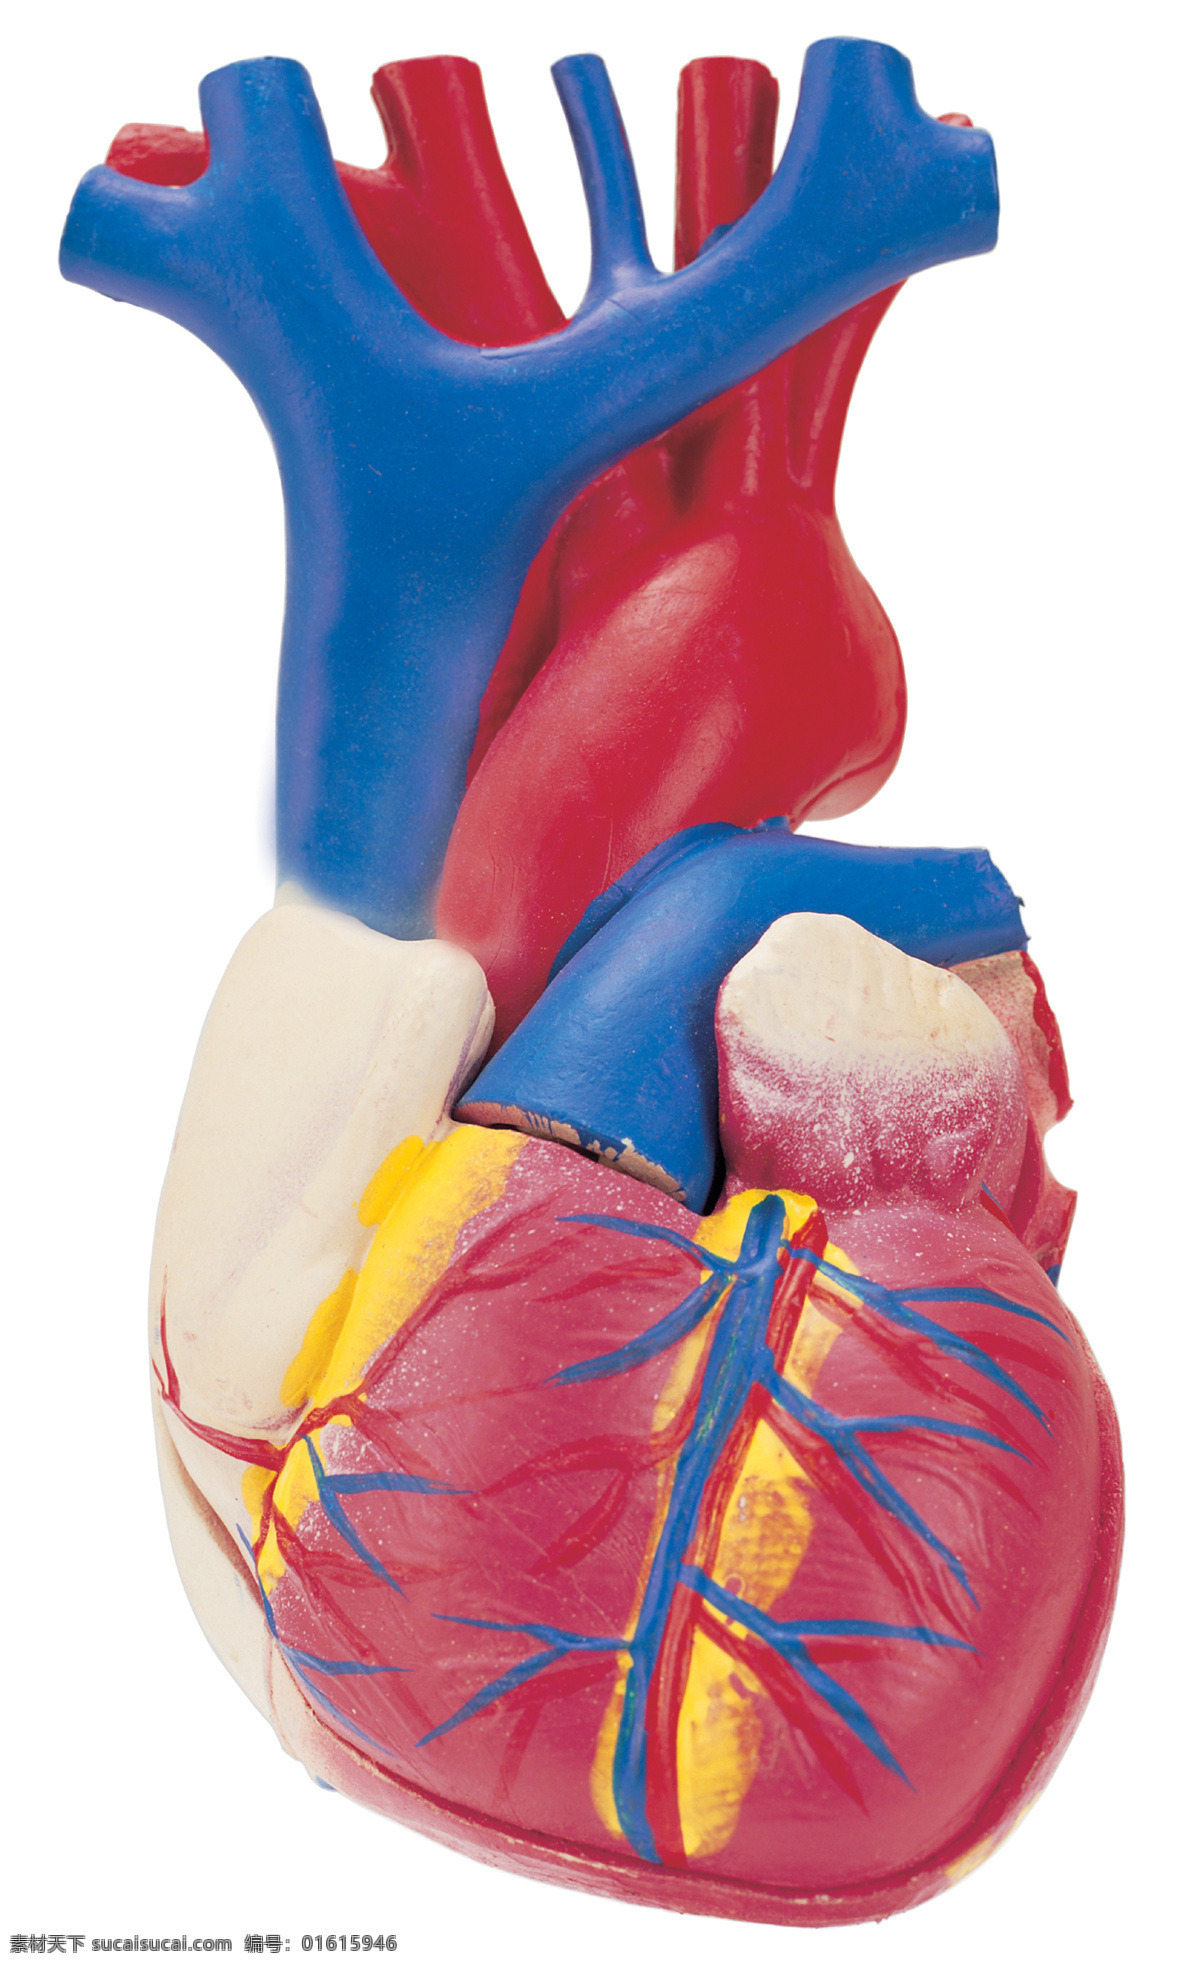 心脏 模型 科学研究 心脏模型 科技图片 现代科技